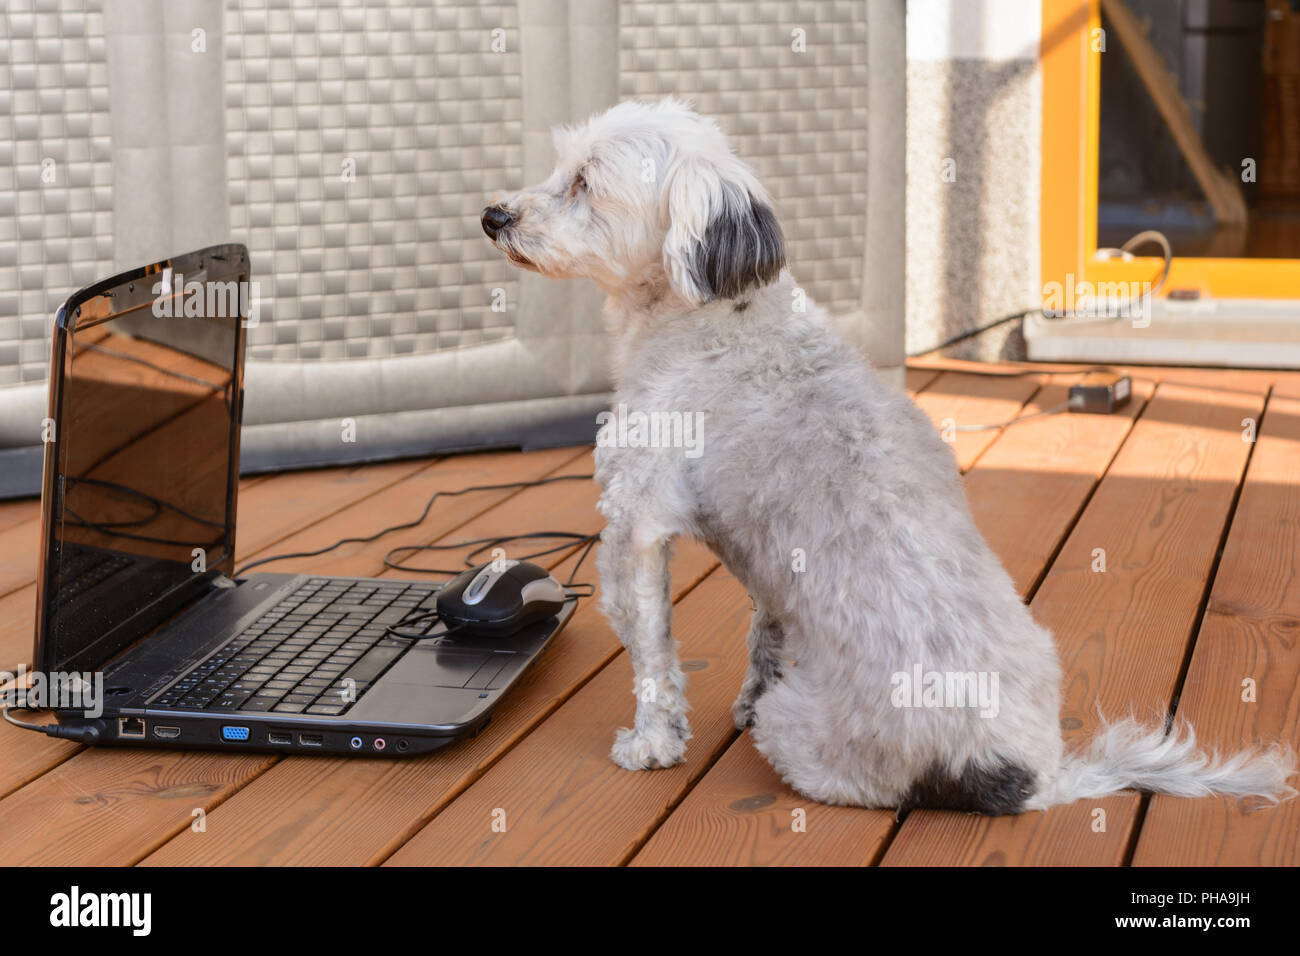 Bichon Havanais blanc curieusement assis en face d'un ordinateur portable Banque D'Images